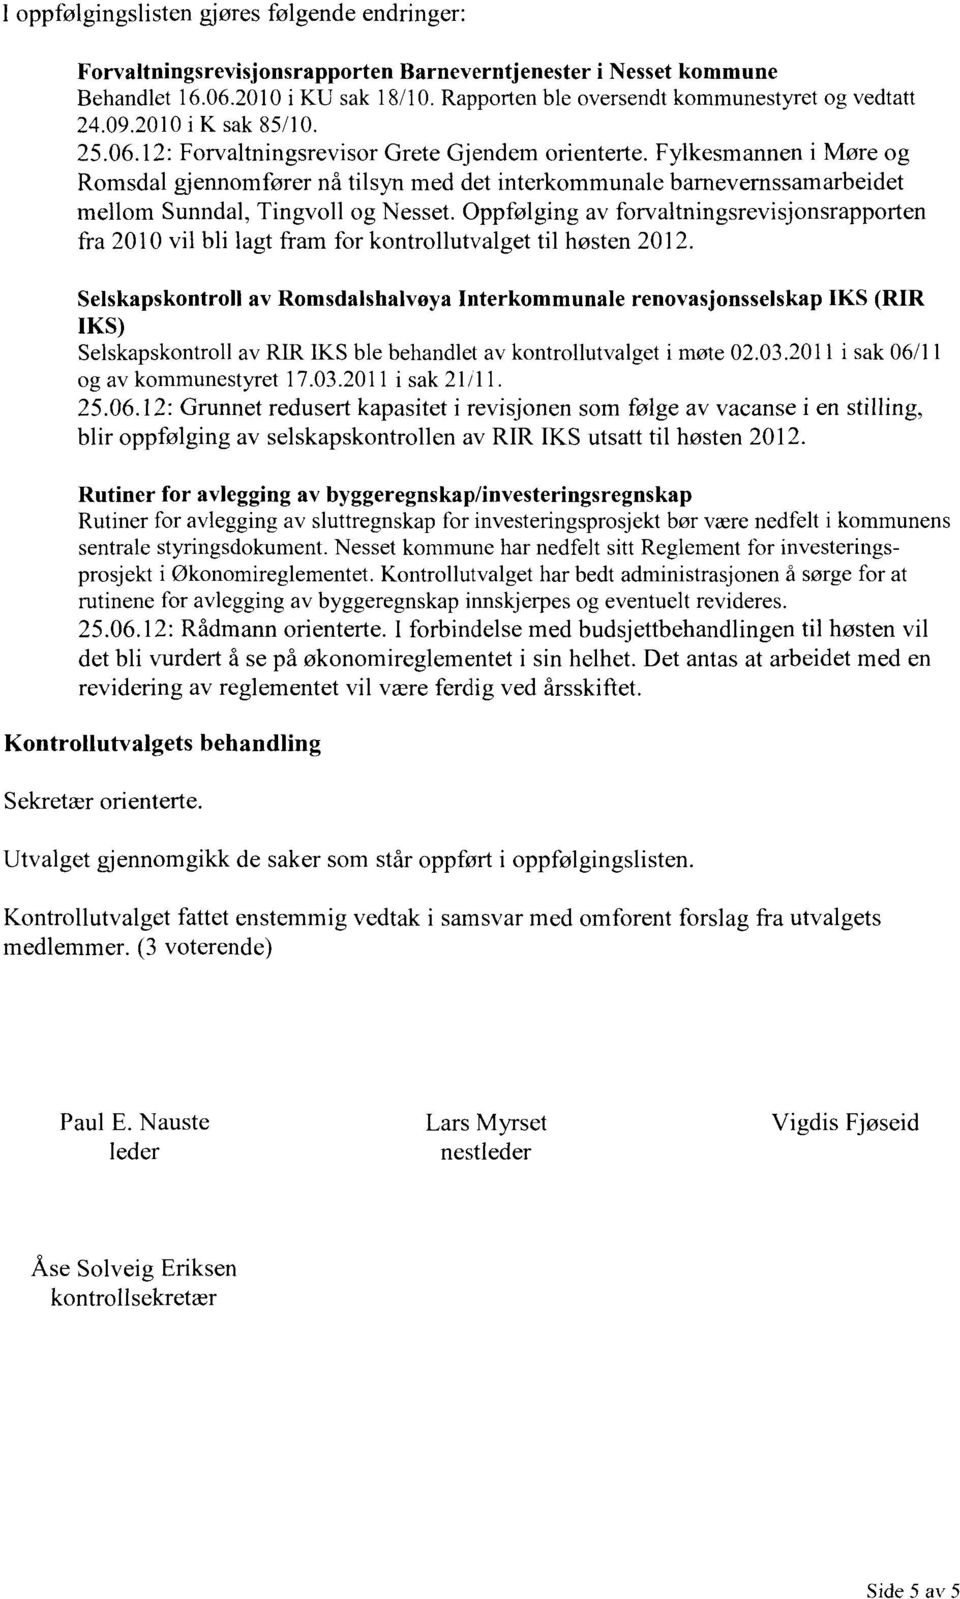 Fylkesmannen i Møre og Romsdal gjennomfører nå tilsyn med det interkommunale barnevernssamarbeidet mellom Sunndal, Tingvoll og Nesset.